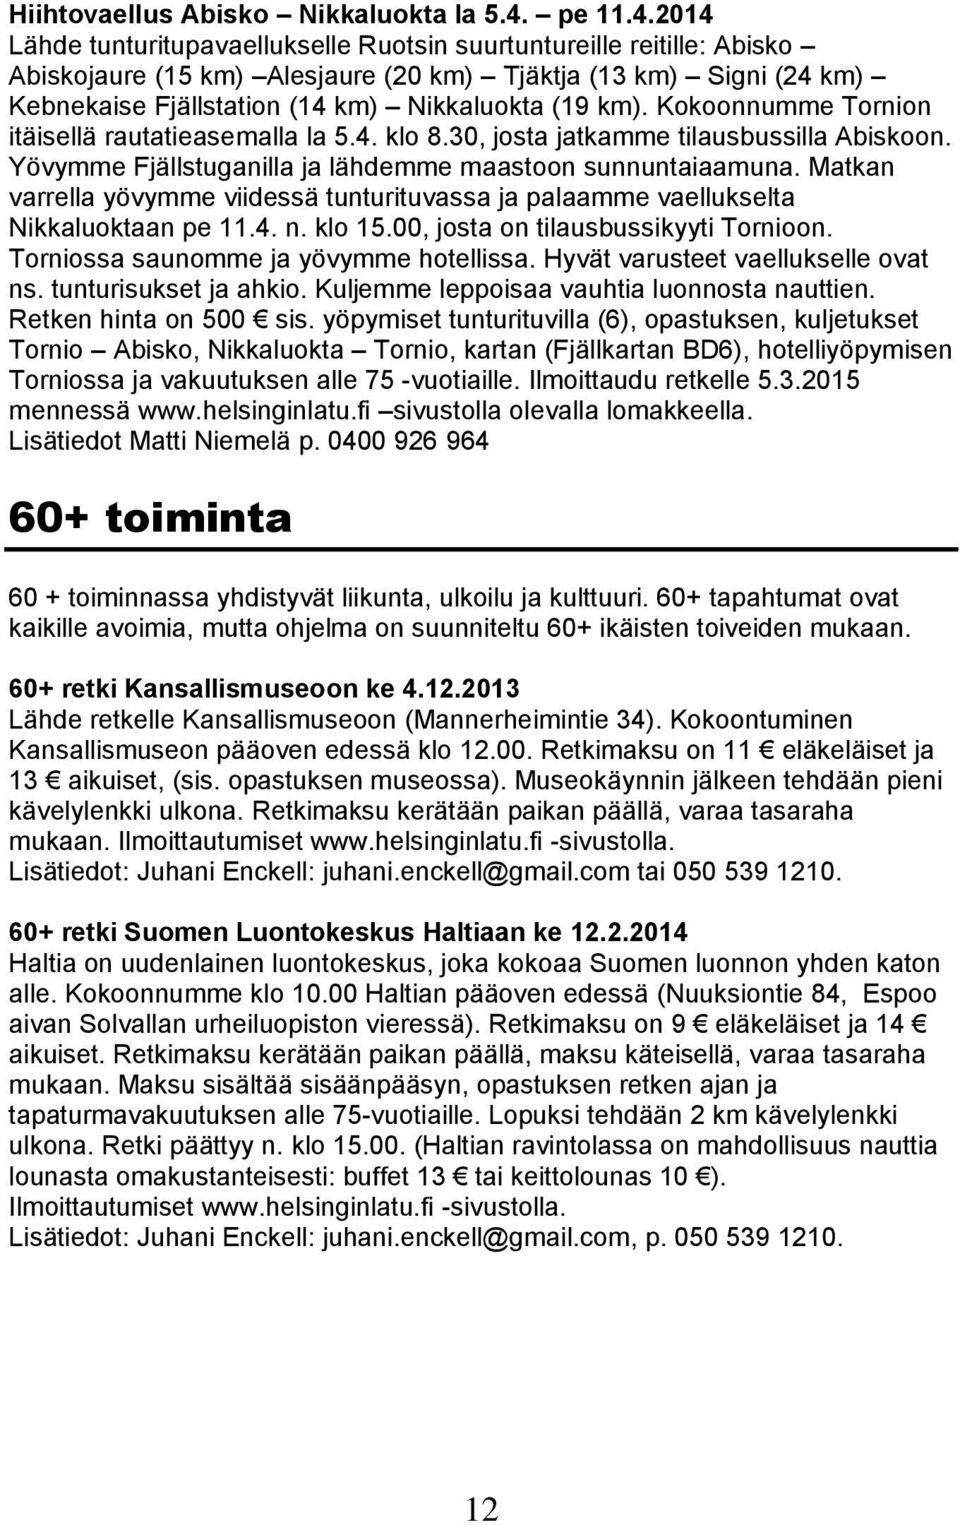 2014 Lähde tunturitupavaellukselle Ruotsin suurtuntureille reitille: Abisko Abiskojaure (15 km) Alesjaure (20 km) Tjäktja (13 km) Signi (24 km) Kebnekaise Fjällstation (14 km) Nikkaluokta (19 km).